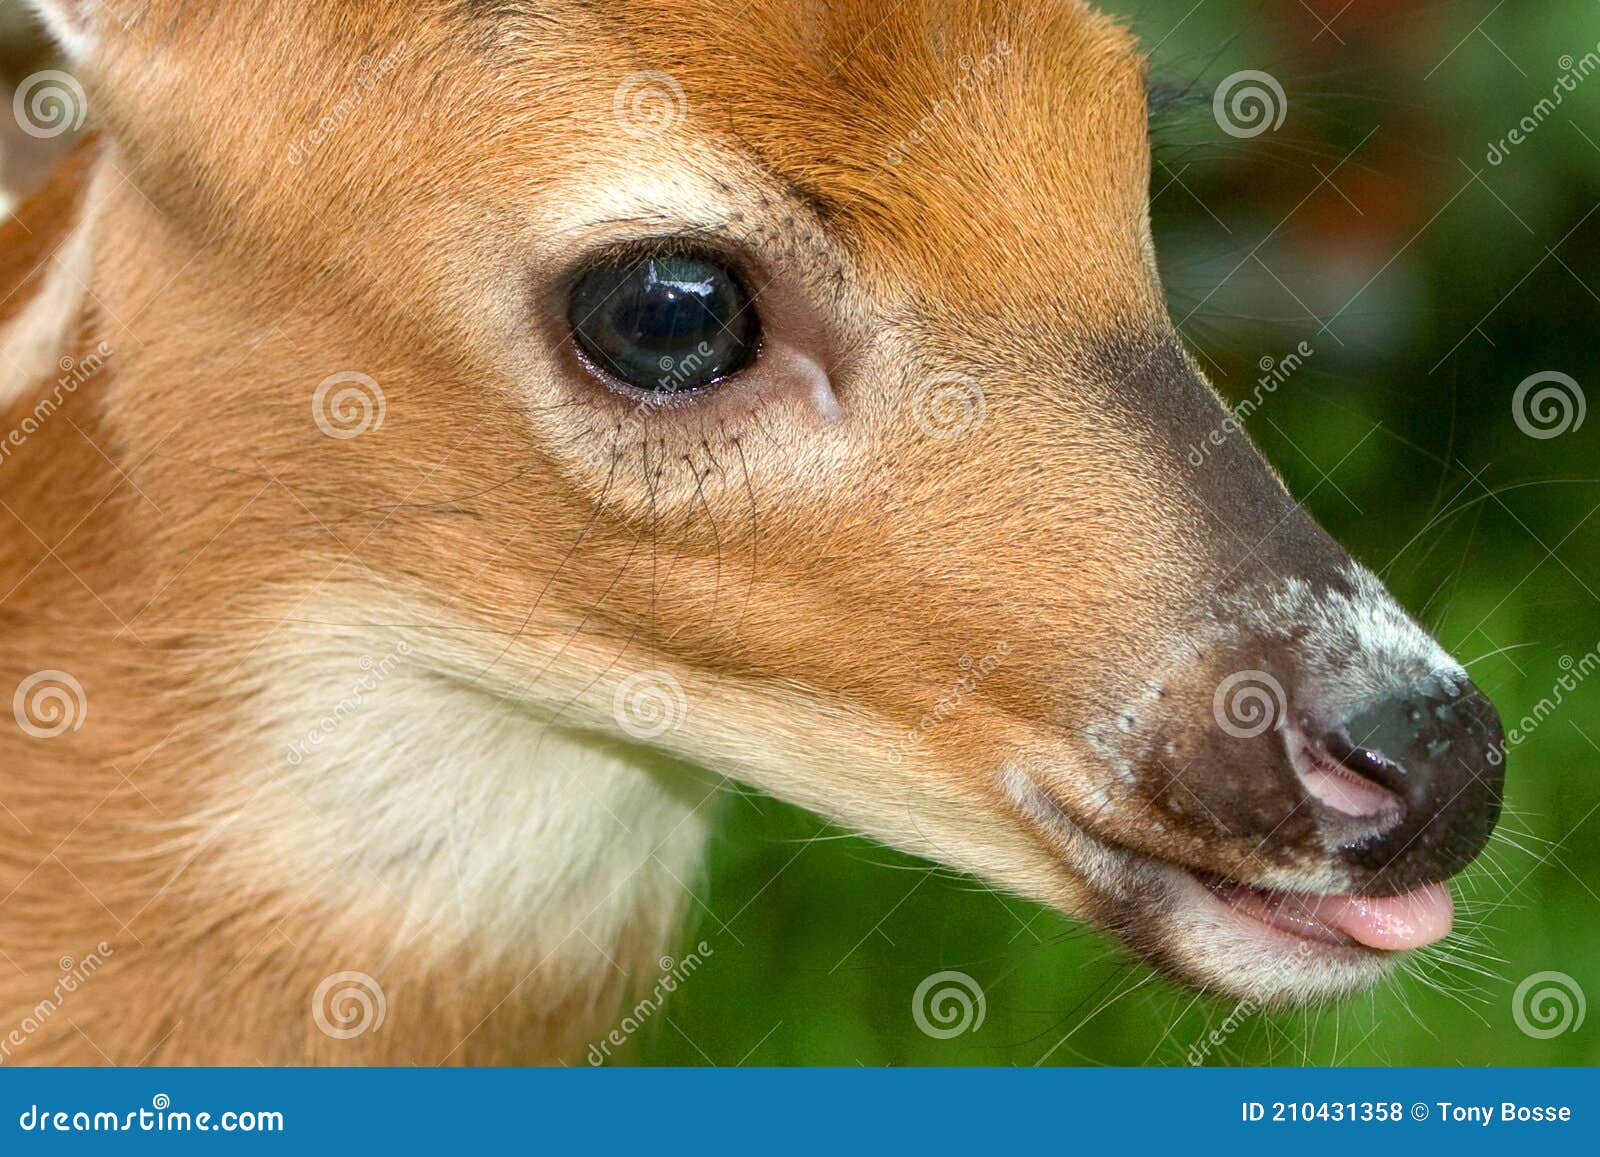 baby deer, faun face detail closeup